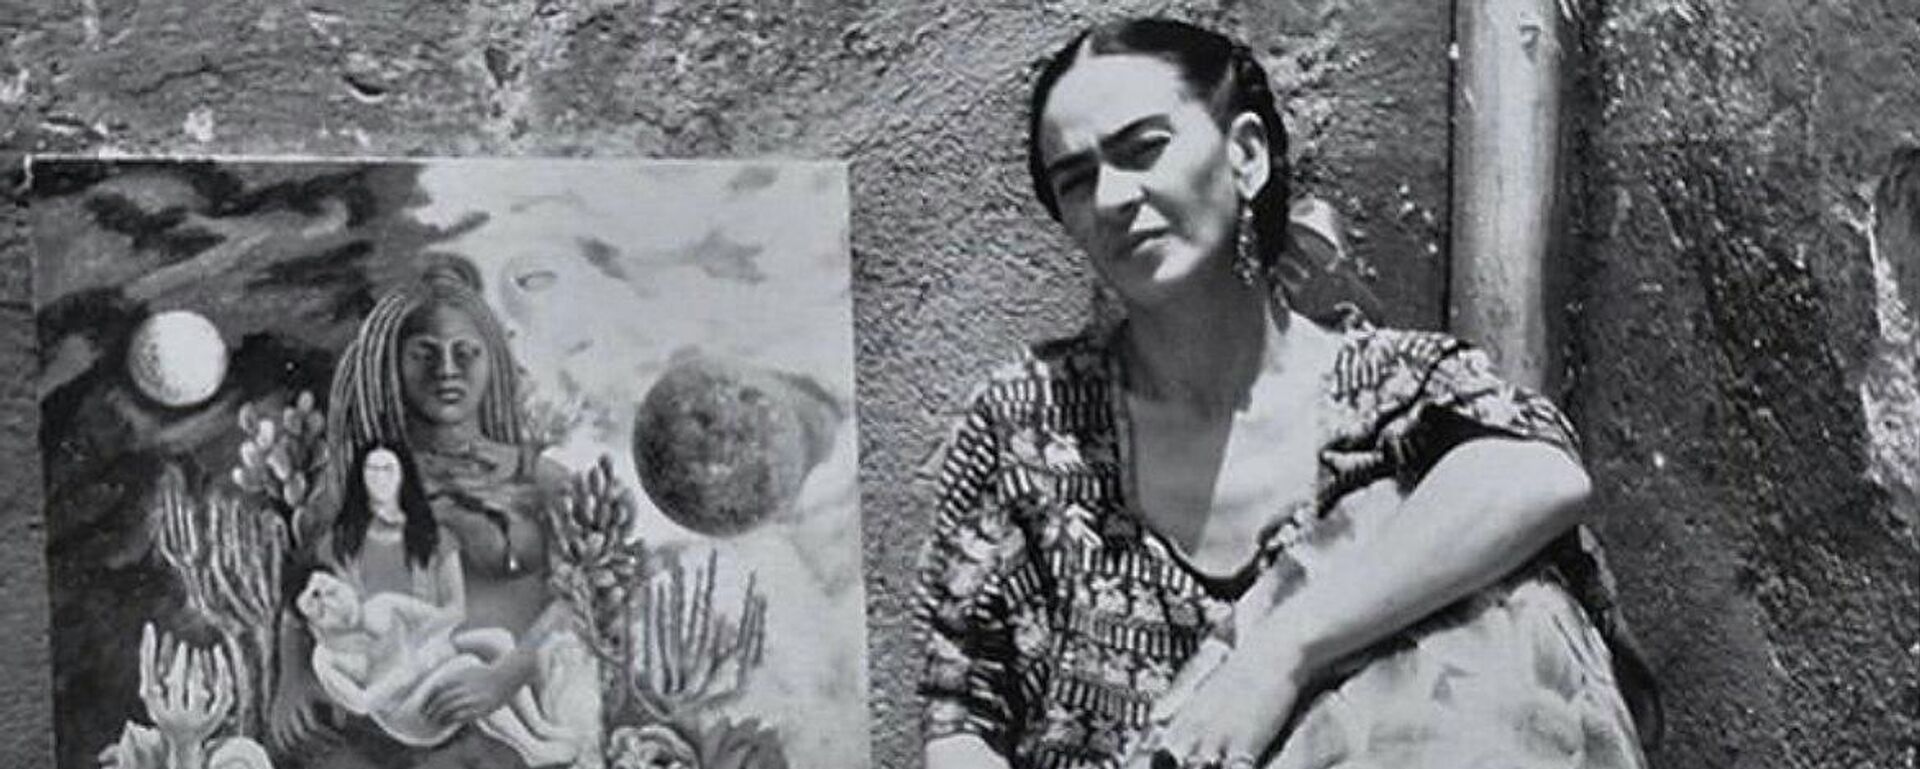 Frida Kahlo en su casa de Coyoacán, al lado de una de sus obras.  - Sputnik Mundo, 1920, 16.12.2021